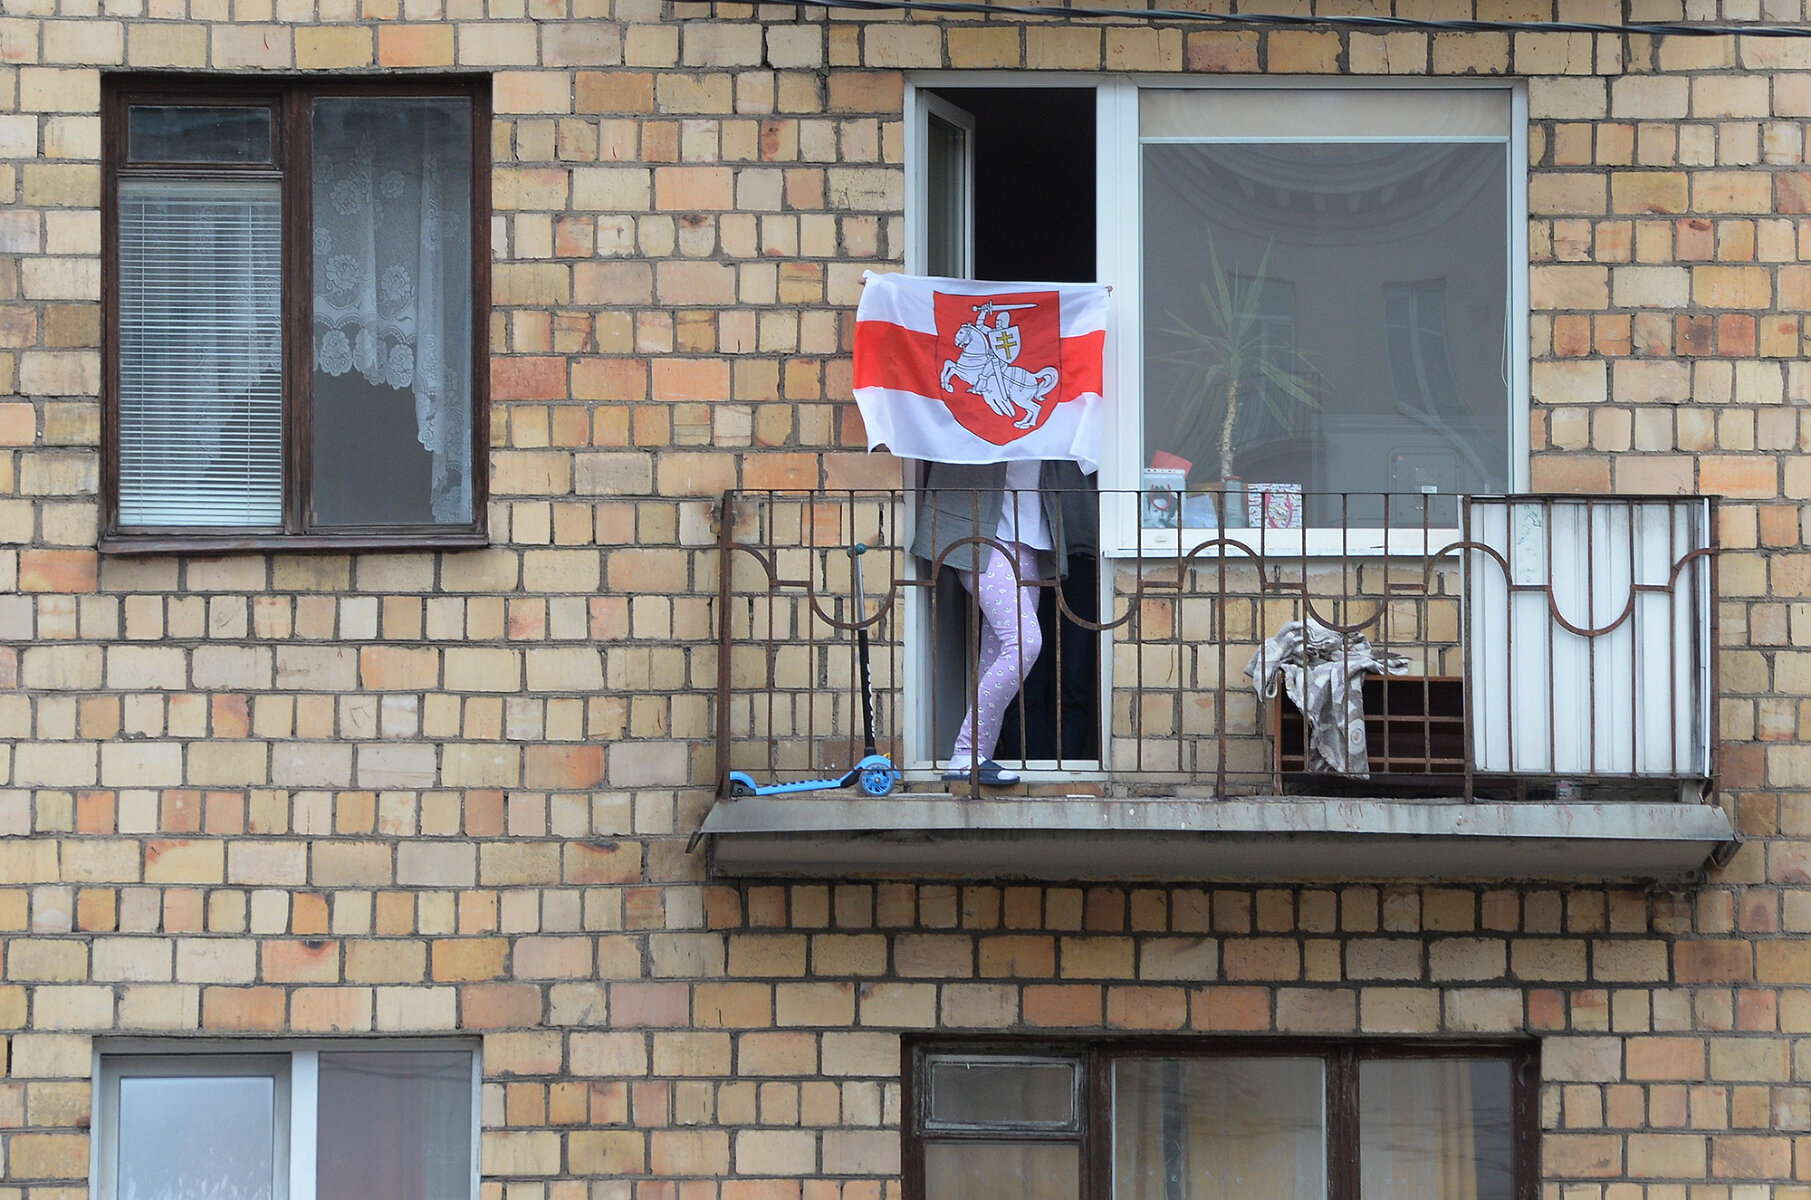 <p>Жительница Минска&nbsp;на балконе&nbsp;дома с бело-красно-белым флагом во время женского марша, 17 октября 2020 года.<br />
<br />
Бело-красно-белый флаг стал одним&nbsp;из главных символов протеста против режима Лукашенко. При этом он был символом&nbsp;белорусского движения за независимость страны еще на рубеже XIX-XX веков. Несмотря на то, что сейчас Лукашенко называет этот флаг&nbsp;&laquo;фашистким&raquo;, именно под ним он давал присягу после избрания президентом&nbsp;в 1994 году. После начала протестов в 2020 году власти Беларуси объявили настоящую войну символике этого цвета. За флаг могли задержать, арестовать, эти цвета закрашивали везде, где только можно.&nbsp;Доходило до абсурда: человека могли задержать&nbsp;за коробку от телевизора LG бело-красно-белого цвета (нет, <a href="https://tvrain.ru/news/zhitelja_minska_zaderzhali_za_belo_krasnuju_korobku_iz_pod_televizora_v_okne-528986/" target="_blank">это не шутка</a>). В итоге весной этого года МВД предложило включить бело-красно-белый флаг&nbsp;в список запрещенной нацистской символики, потому что&nbsp;во время Великой Отечественной войны его использовали белорусские коллаборационисты (<a href="https://tvrain.ru/news/mvd_belarusi_predlozhilo_priznat_belo_krasno_belyj_flag_natsistskoj_simvolikoj-530388/" target="_blank">но не только они</a>).&nbsp;</p>